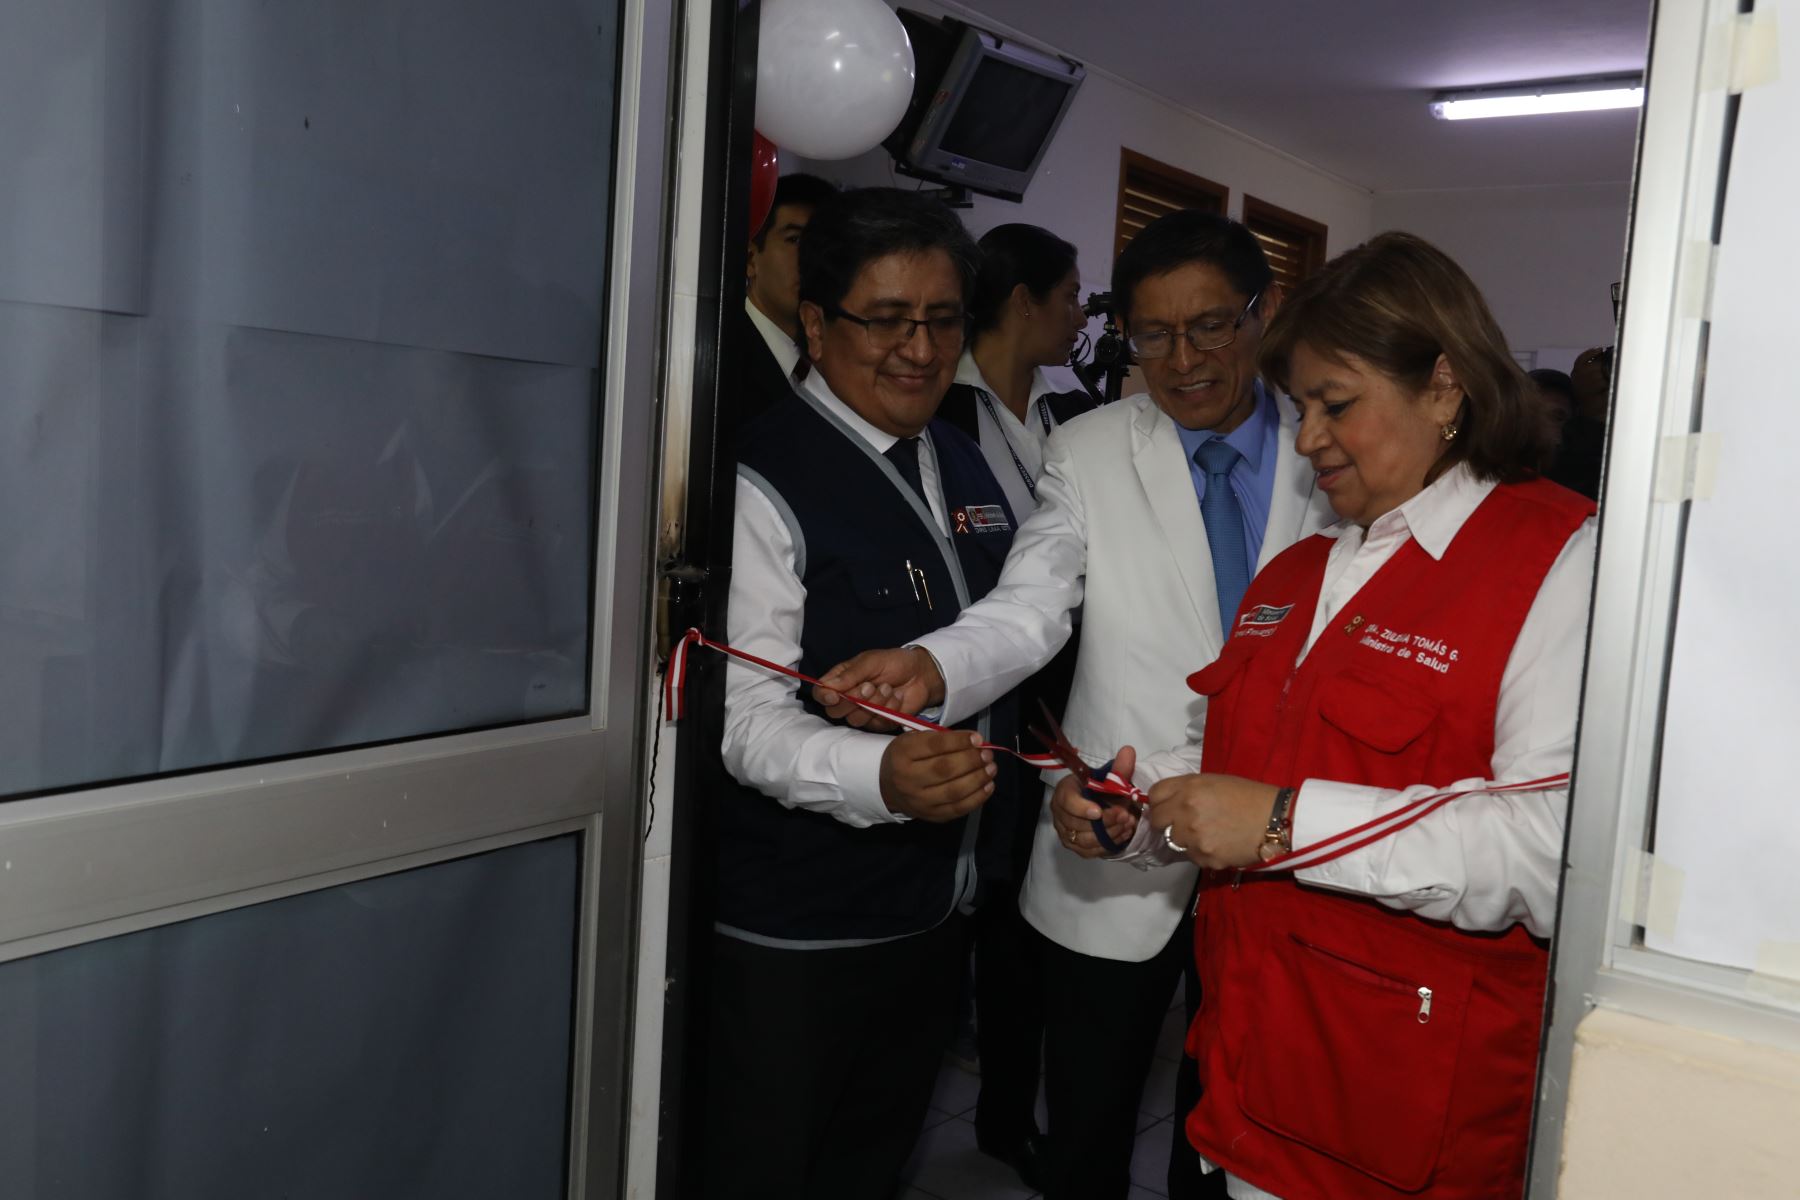 Ministra de Salud Zulema Tomás inauguró el Centro Materno Infantil (CMI) Santa Anita y anuncio la nueva infraestructura, equipamiento y amplió el servicio de 227 centros y puestos de salud en Lima Metropolitana con una inversión de casi 28 millones de soles.Foto.ANDINA/MINSA